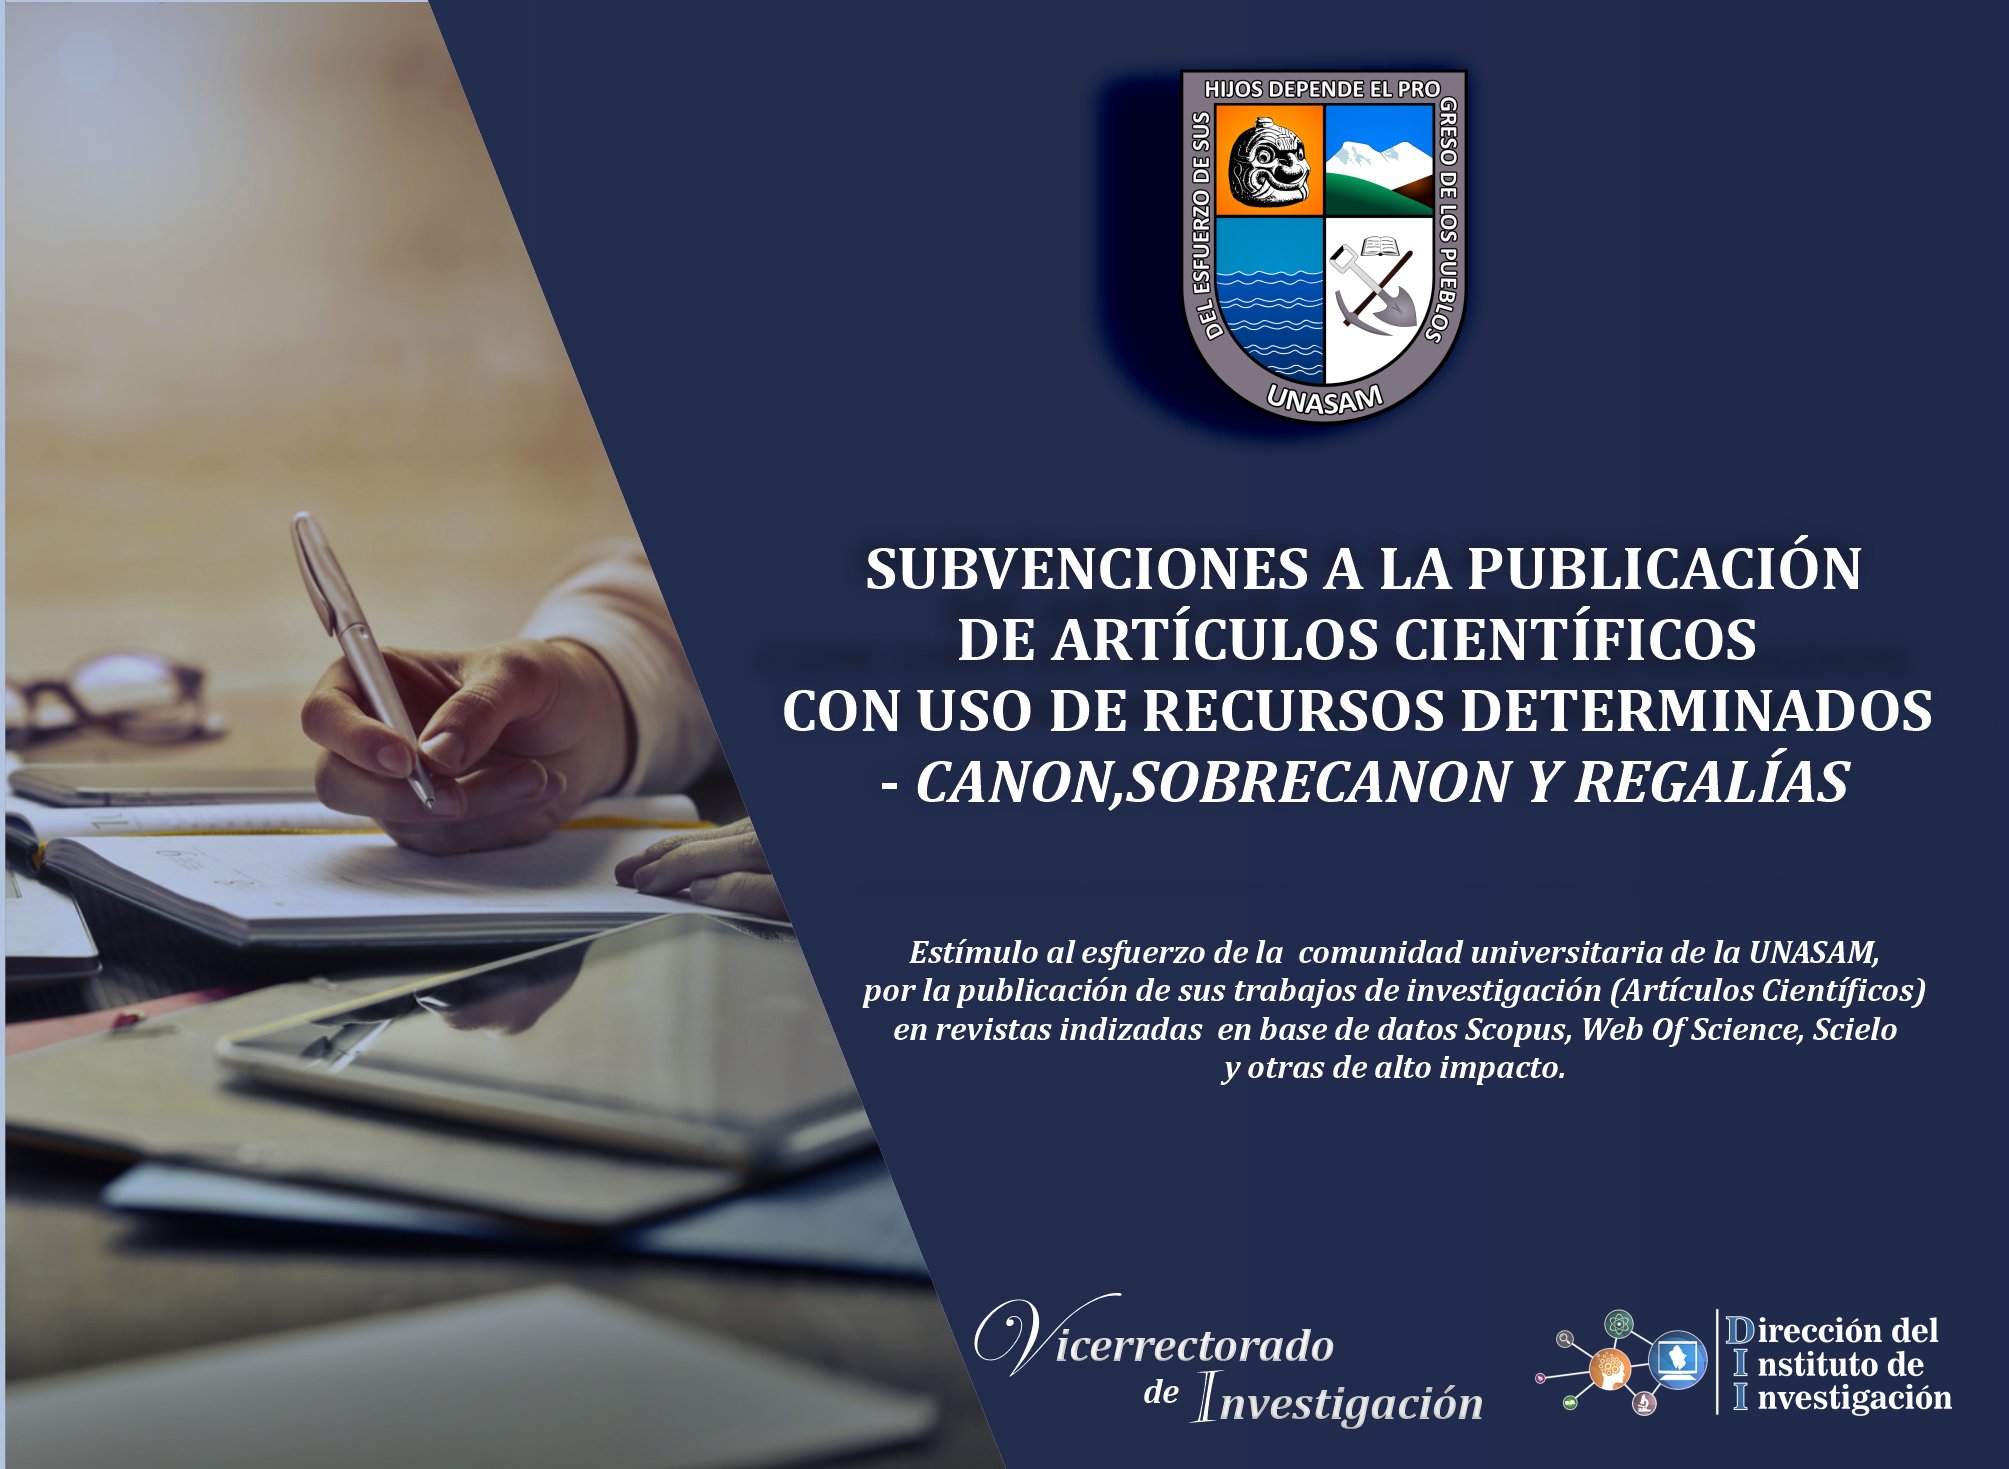 DIRECTIVA DE SUBVENCIONES A LA PUBLICACIÓN DE ARTÍCULOS CIENTÍFICOS CON USO DE RECURSOS DETERMINADOS - CANON, SOBRECANON Y REGALÍAS